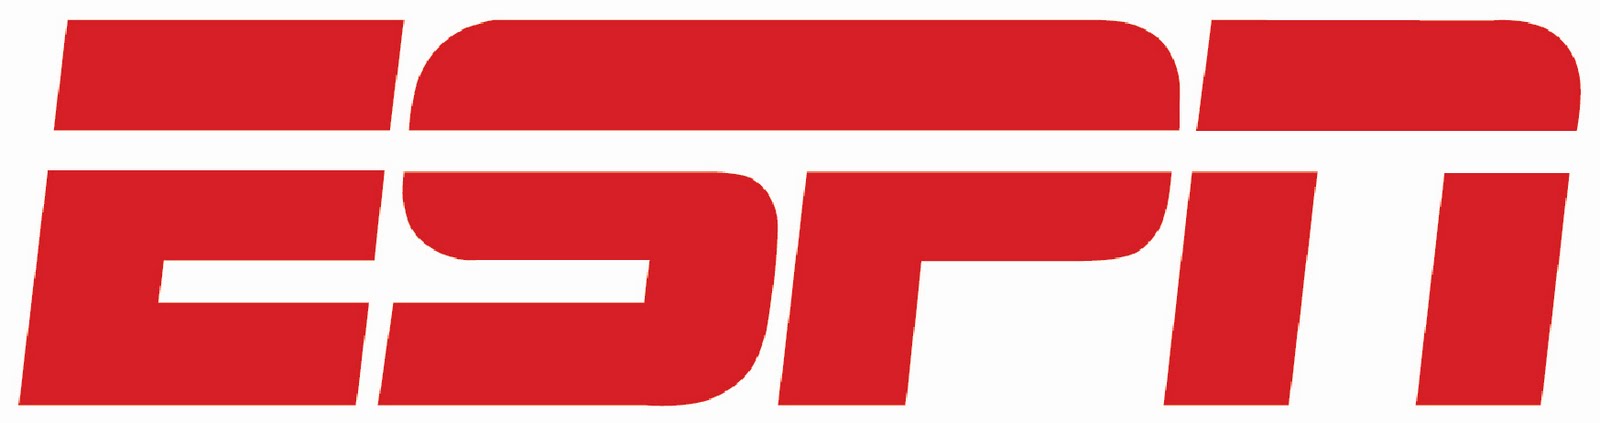 ESPN Logo - ESPN Vector Logo | Free Indian Logos